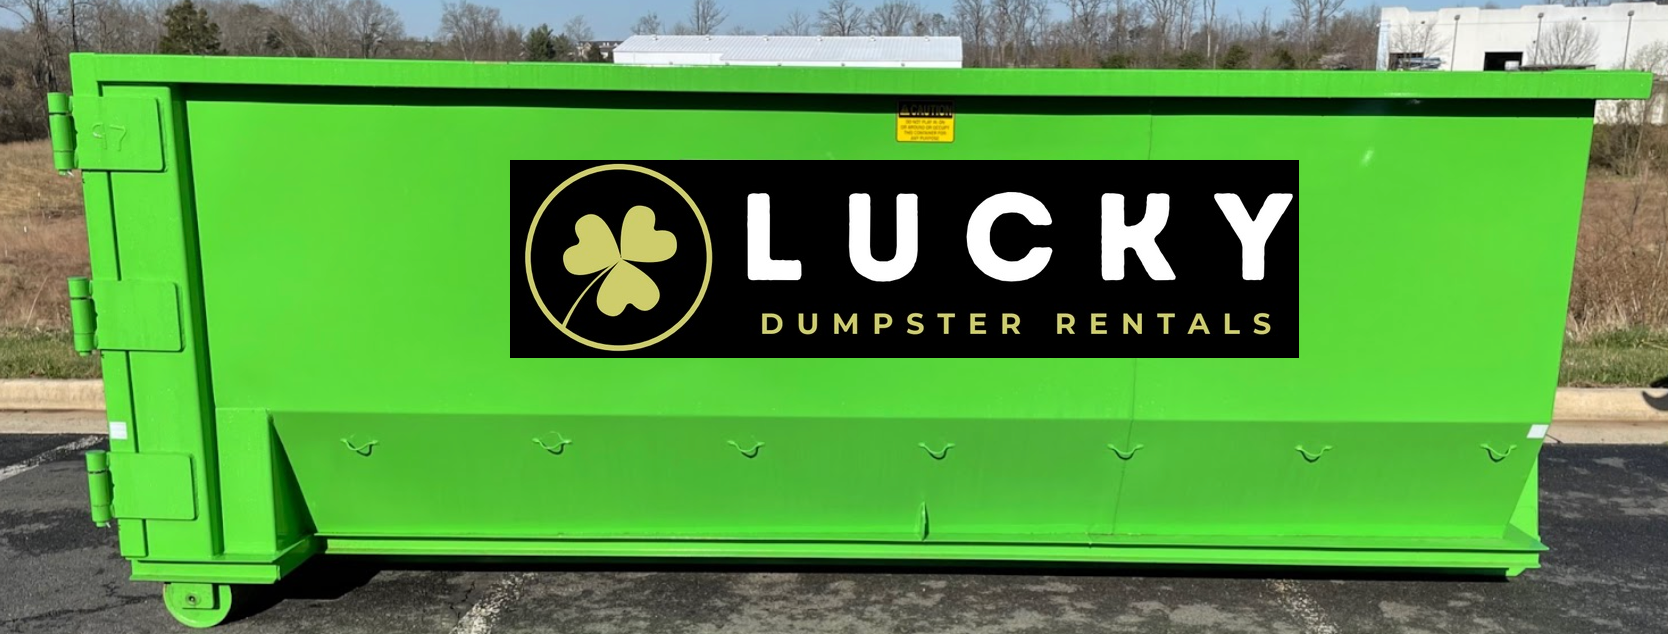 Franklin Dumpster Rental - Lucky Dumpster Rentals of Franklin, GA.